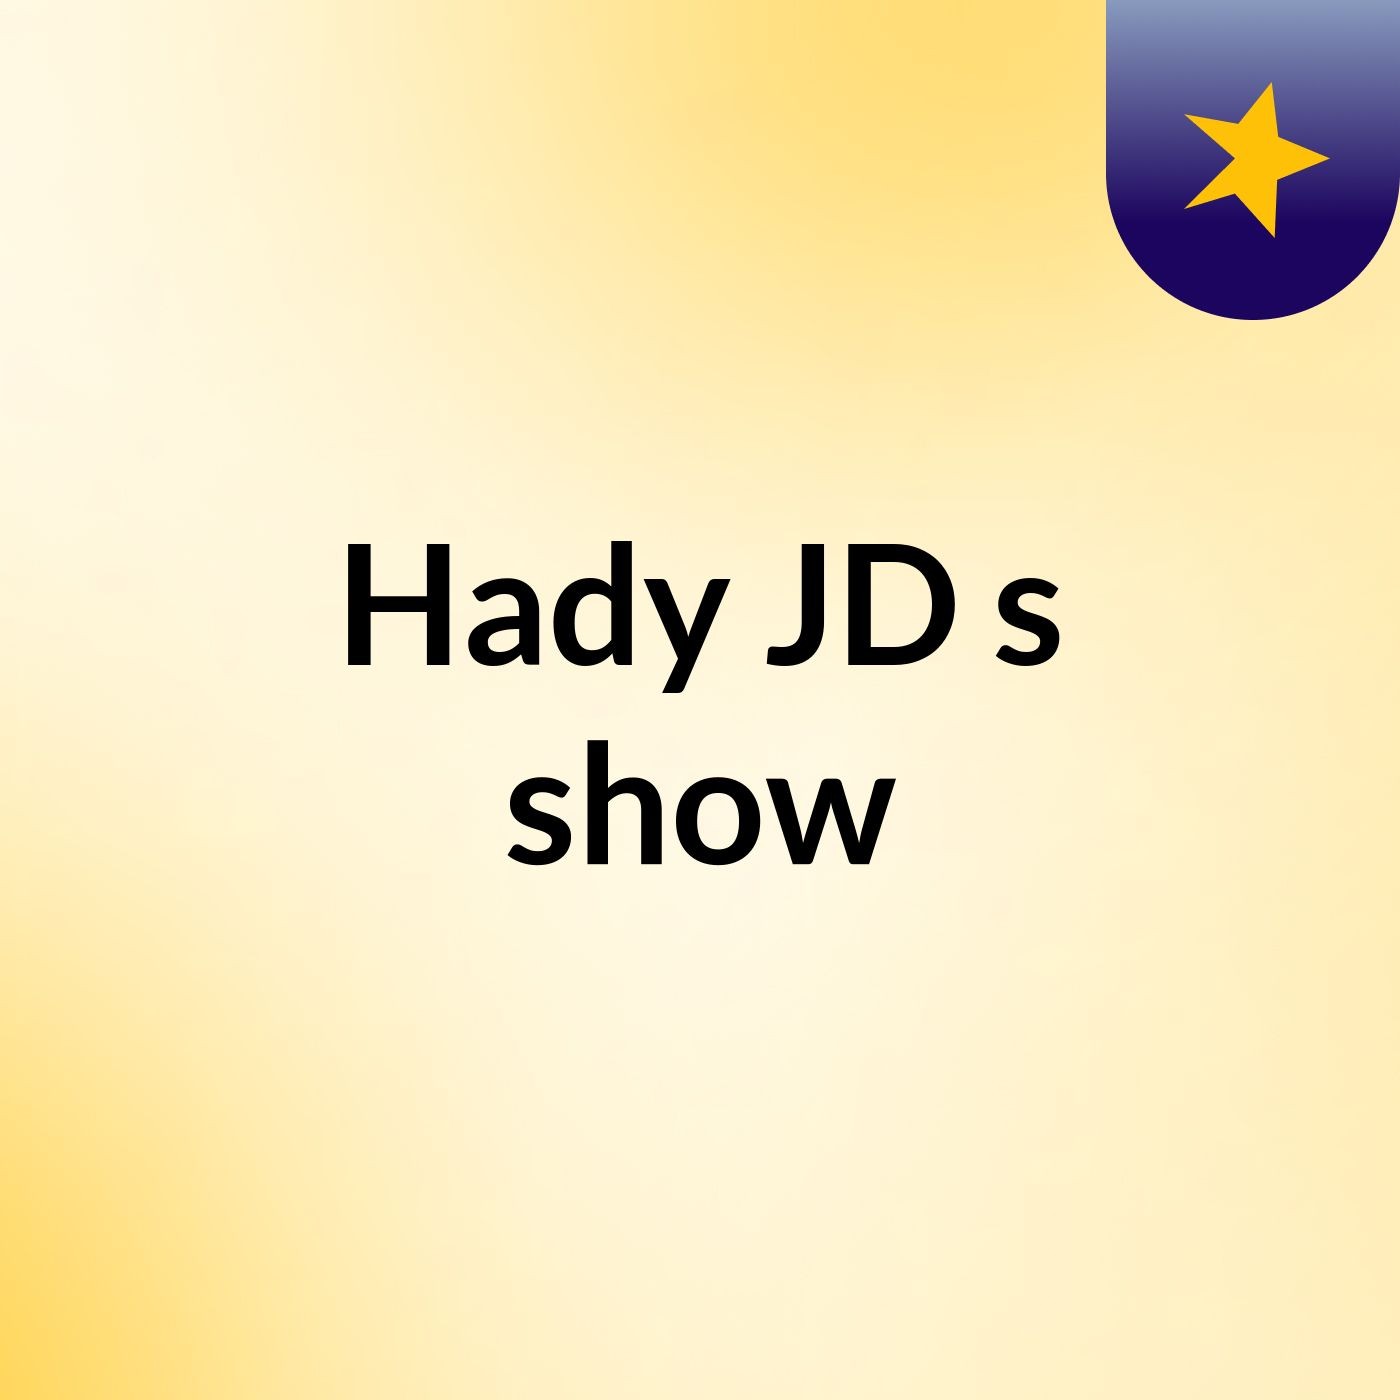 Hady JD's show